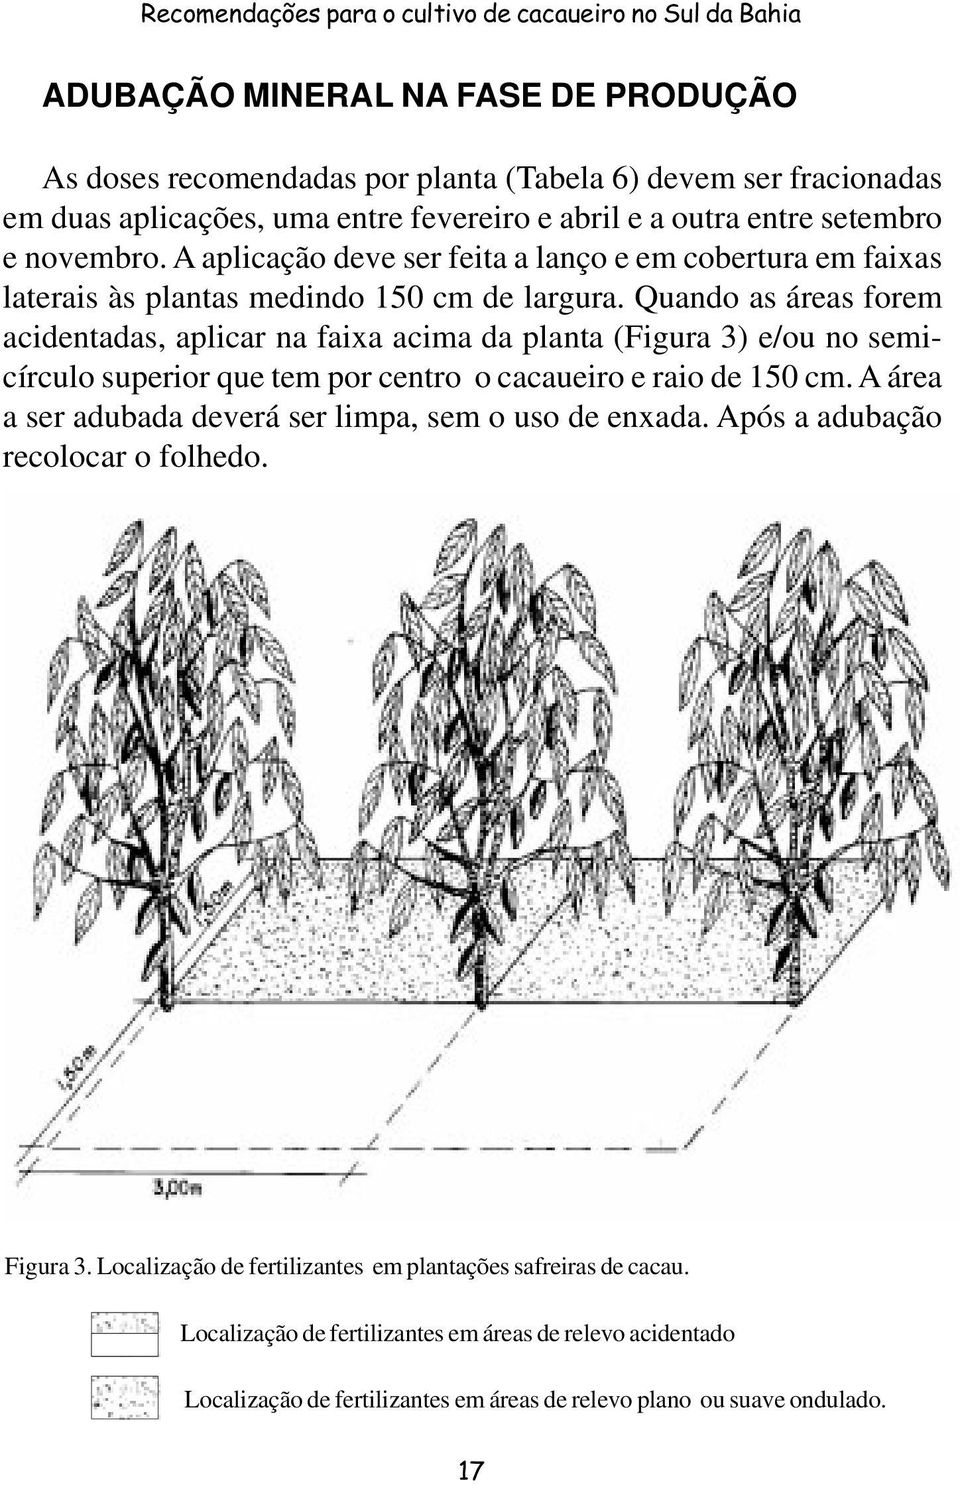 Quando as áreas forem acidentadas, aplicar na faixa acima da planta (Figura 3) e/ou no semicírculo superior que tem por centro o cacaueiro e raio de 150 cm.